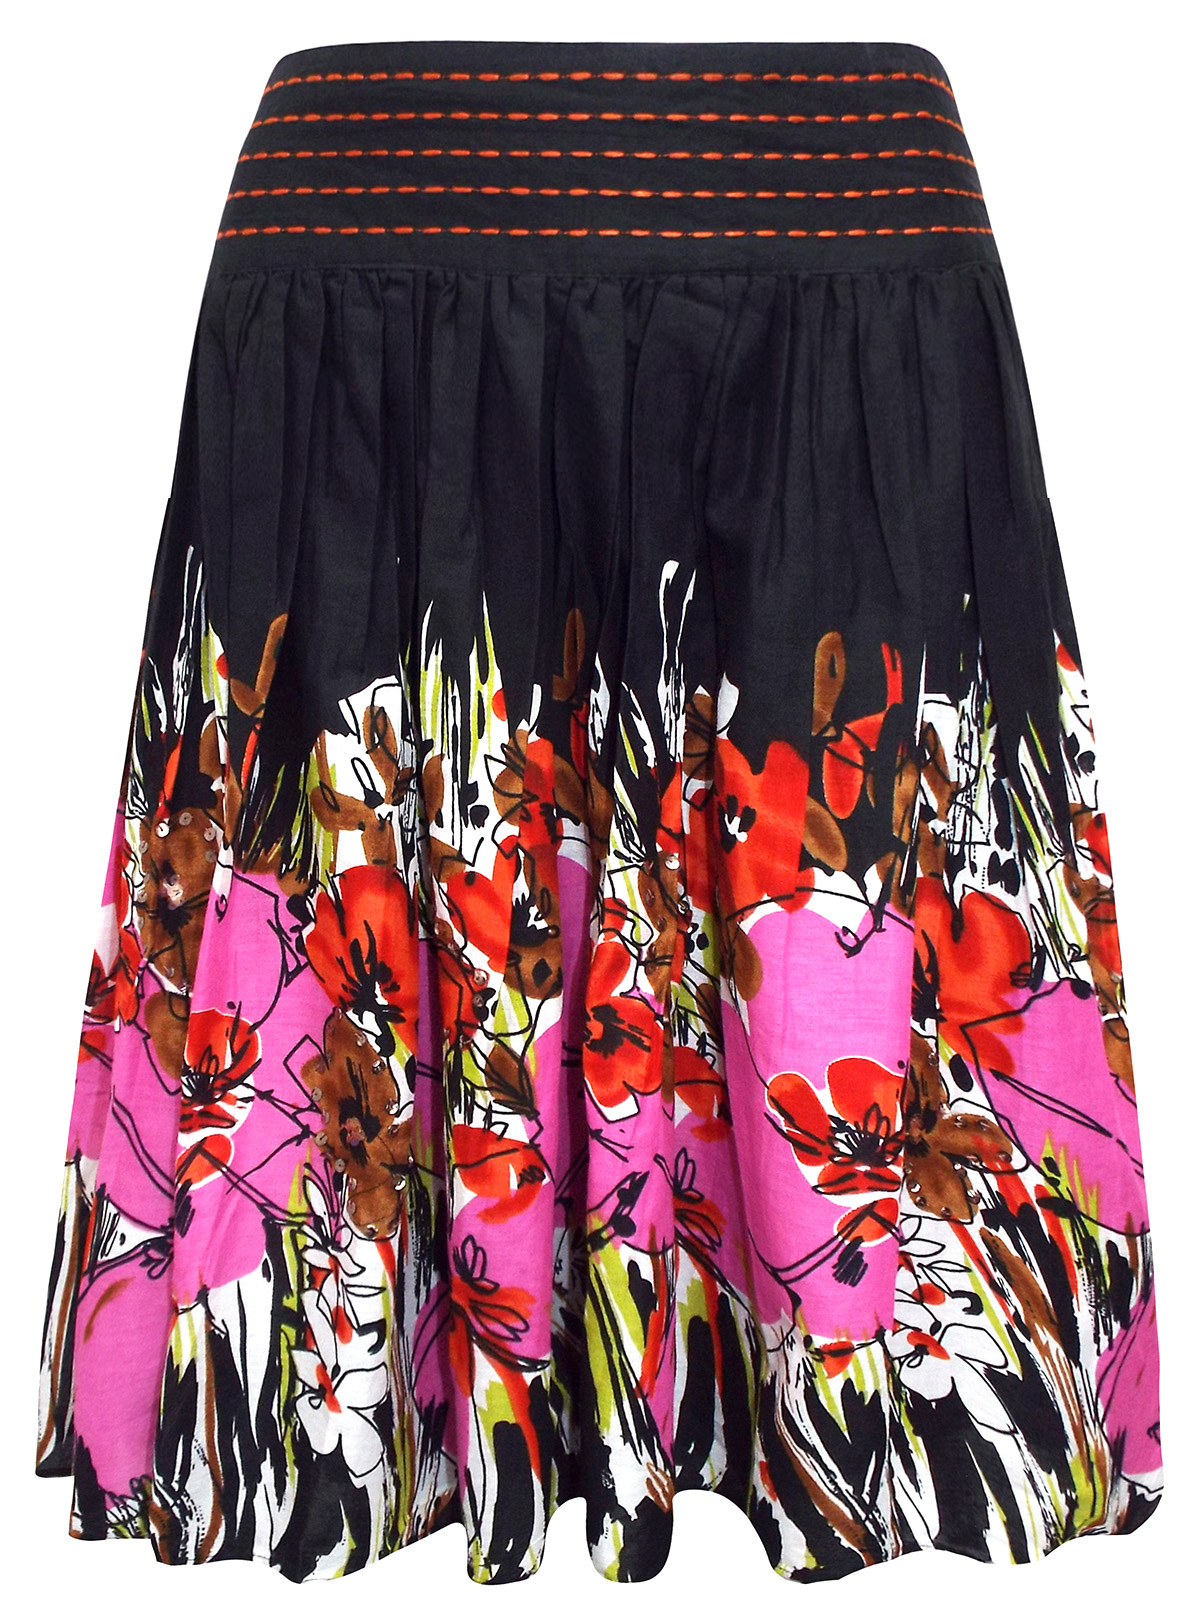 M&Co - - M&Co BLACK Pull On Floral Print Sequin Embellished Skirt ...